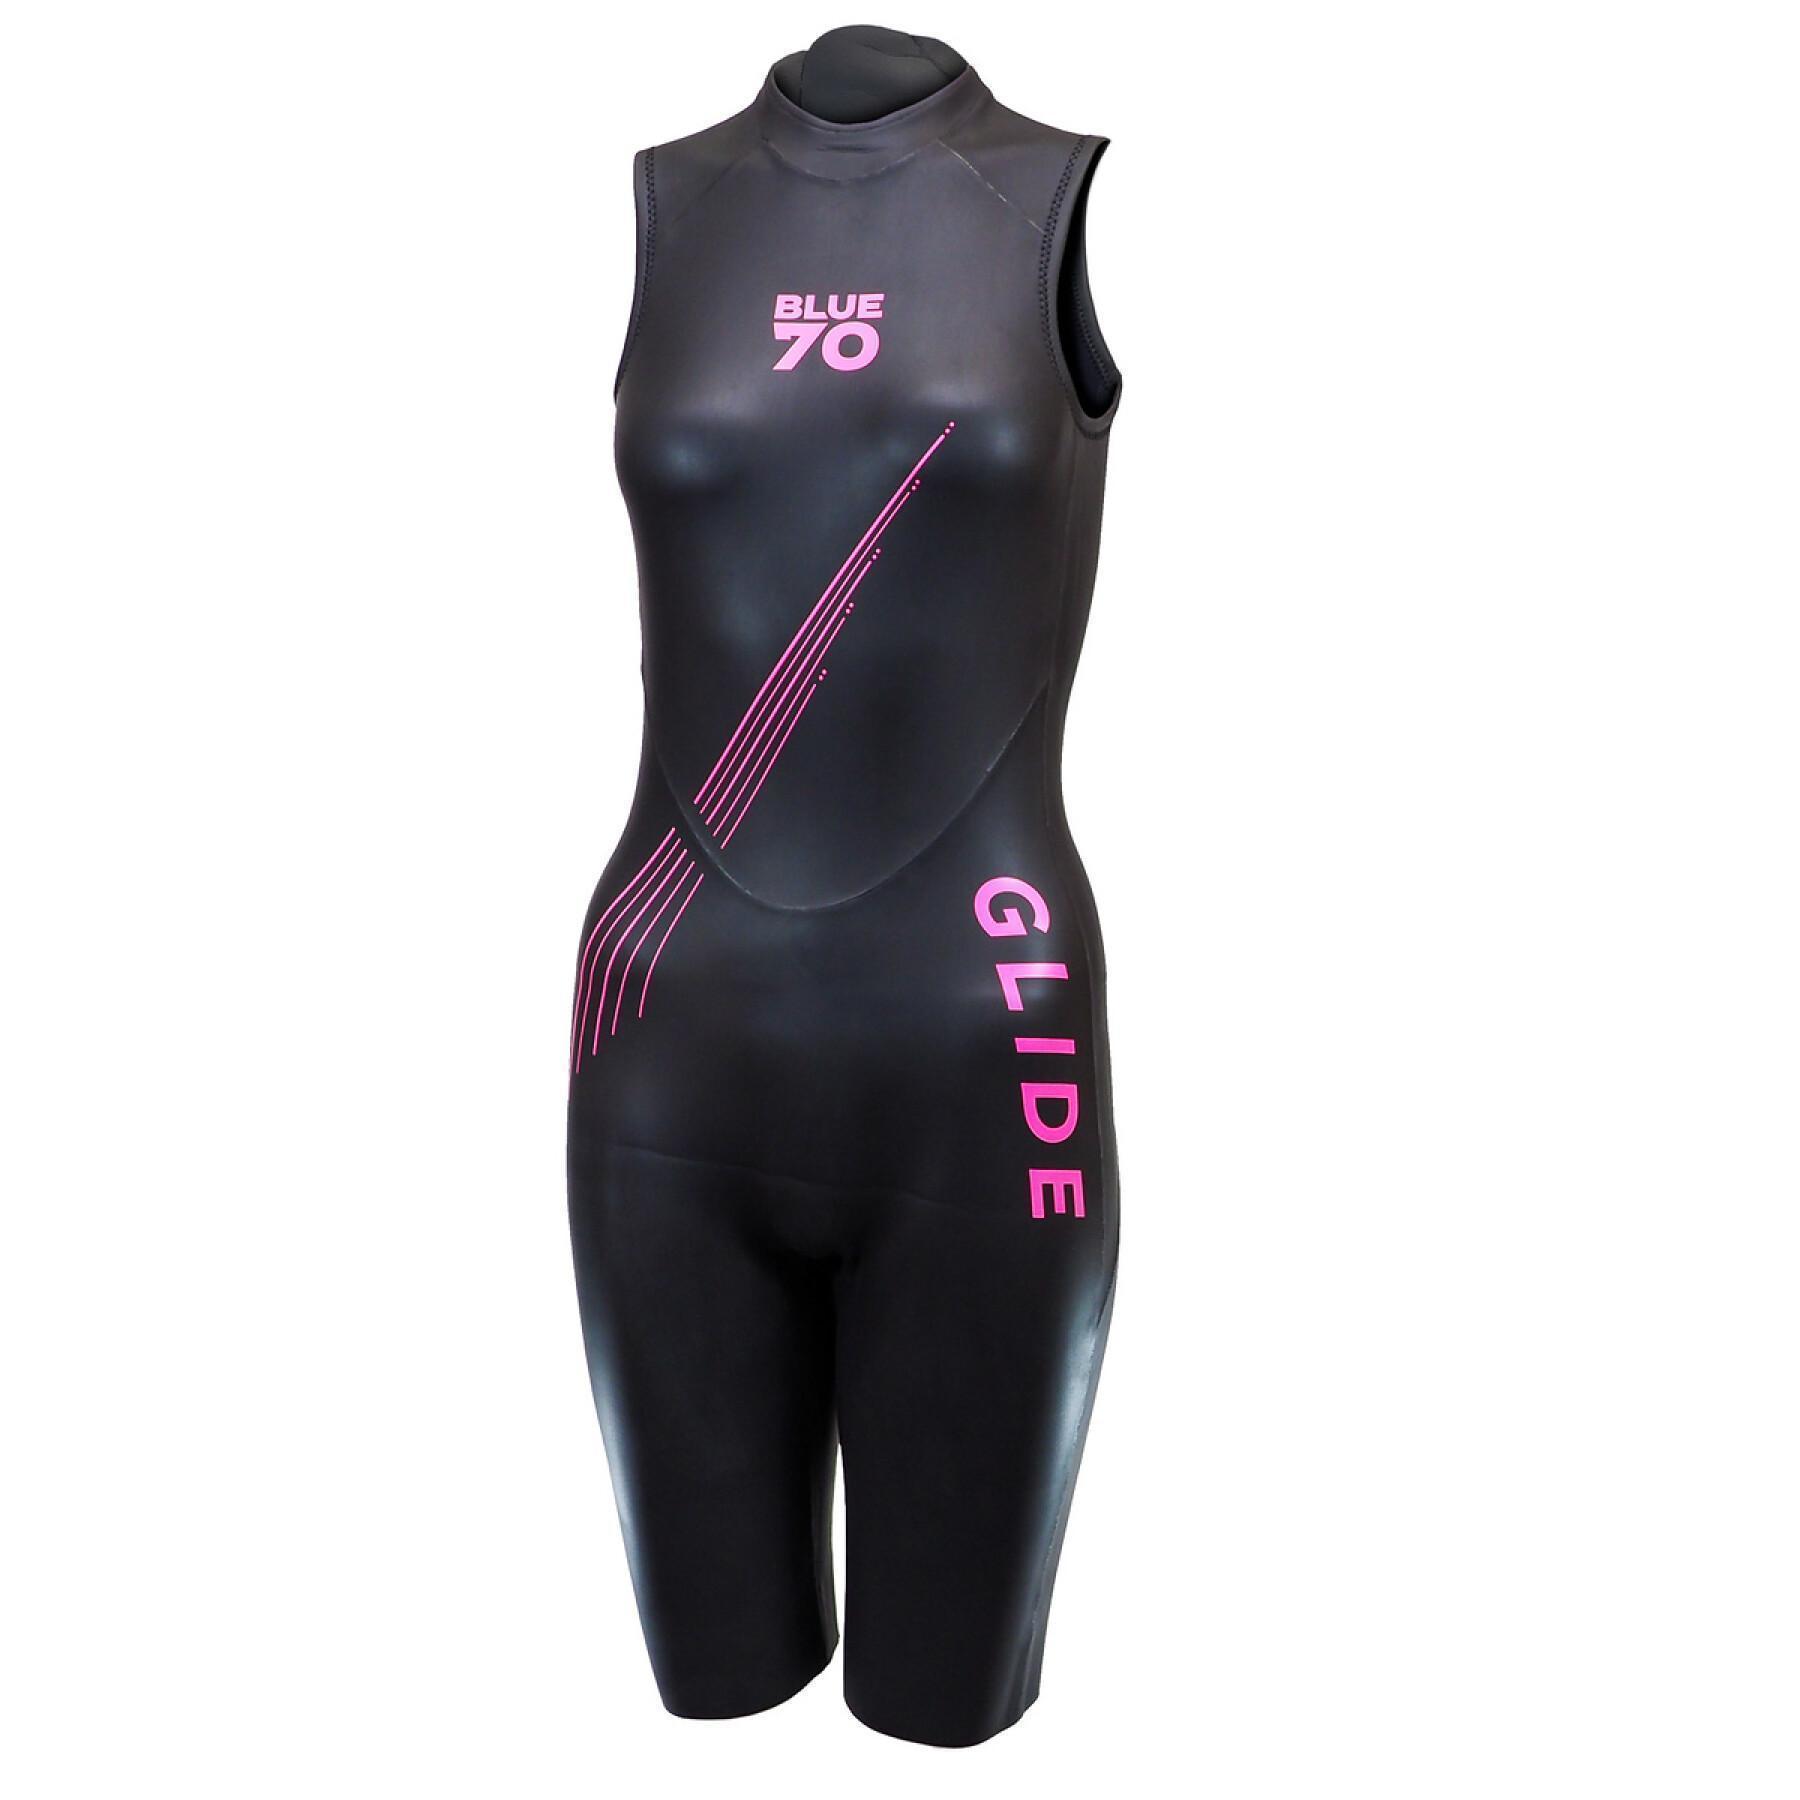 Women's triathlon suit Blue Seventy Glide SJ